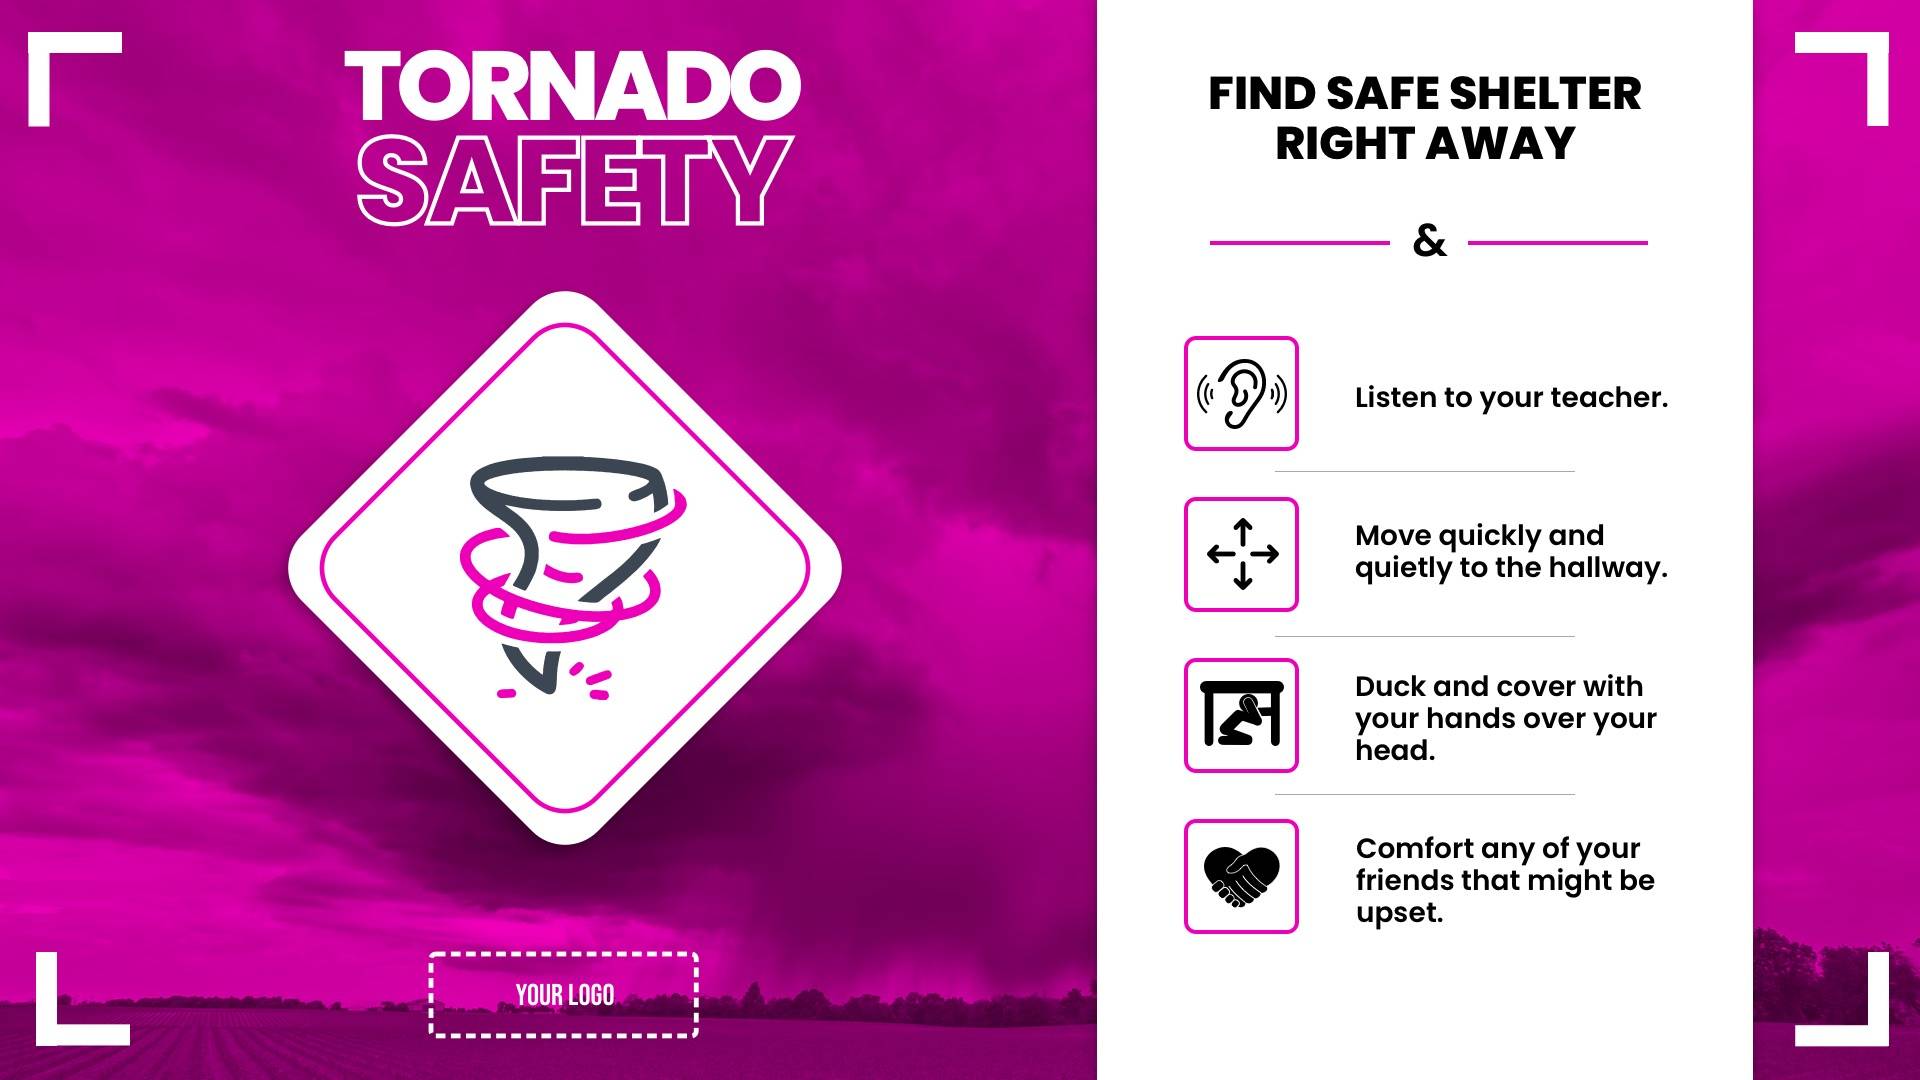 School Safety - Tornado Digital Signage Template